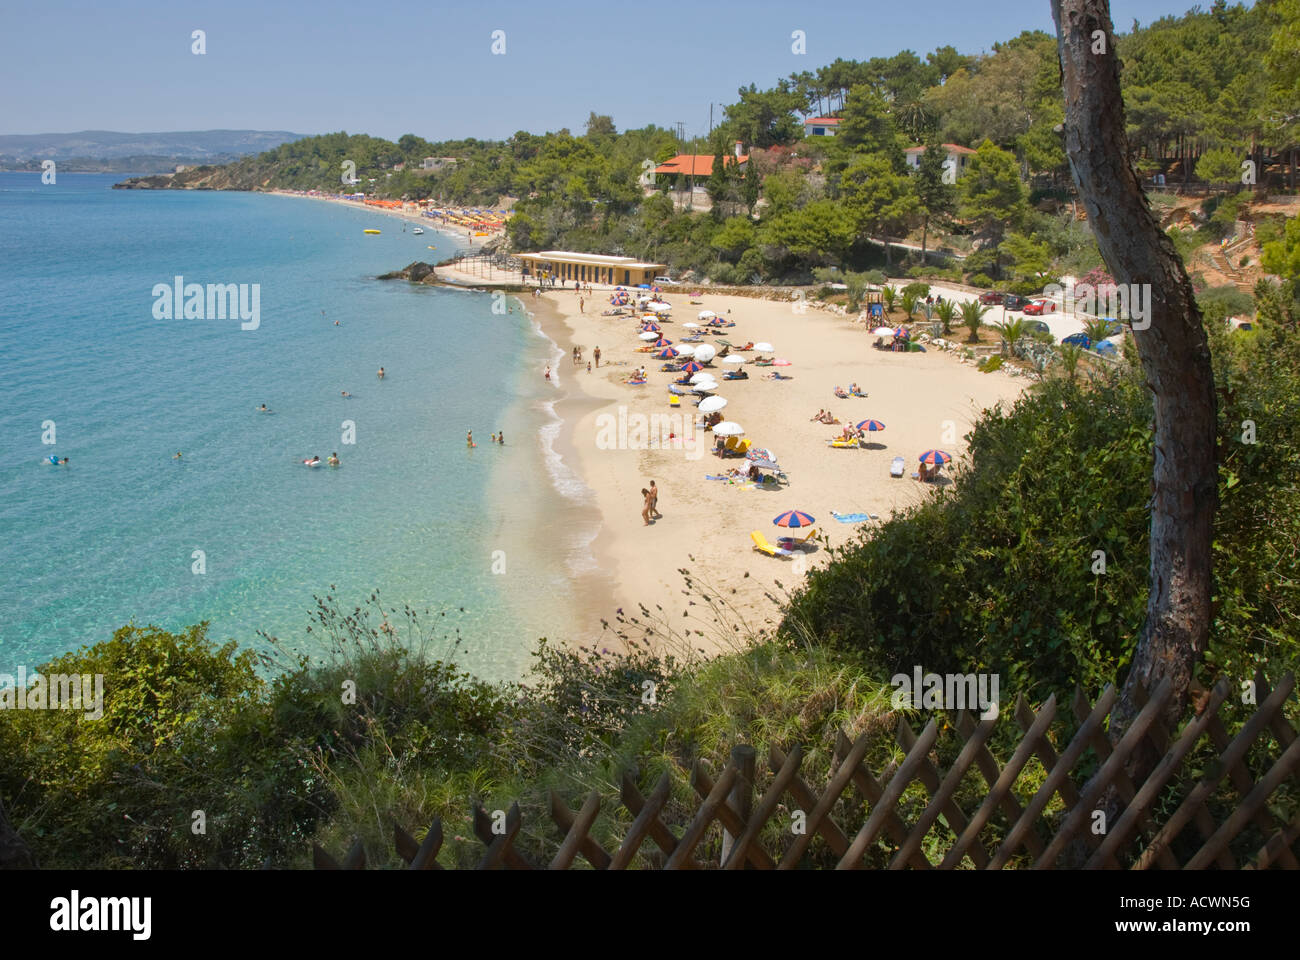 Strand von Platis Gialos, Lassi, Kefalonia. Ionische Inseln Griechenland. Stockfoto